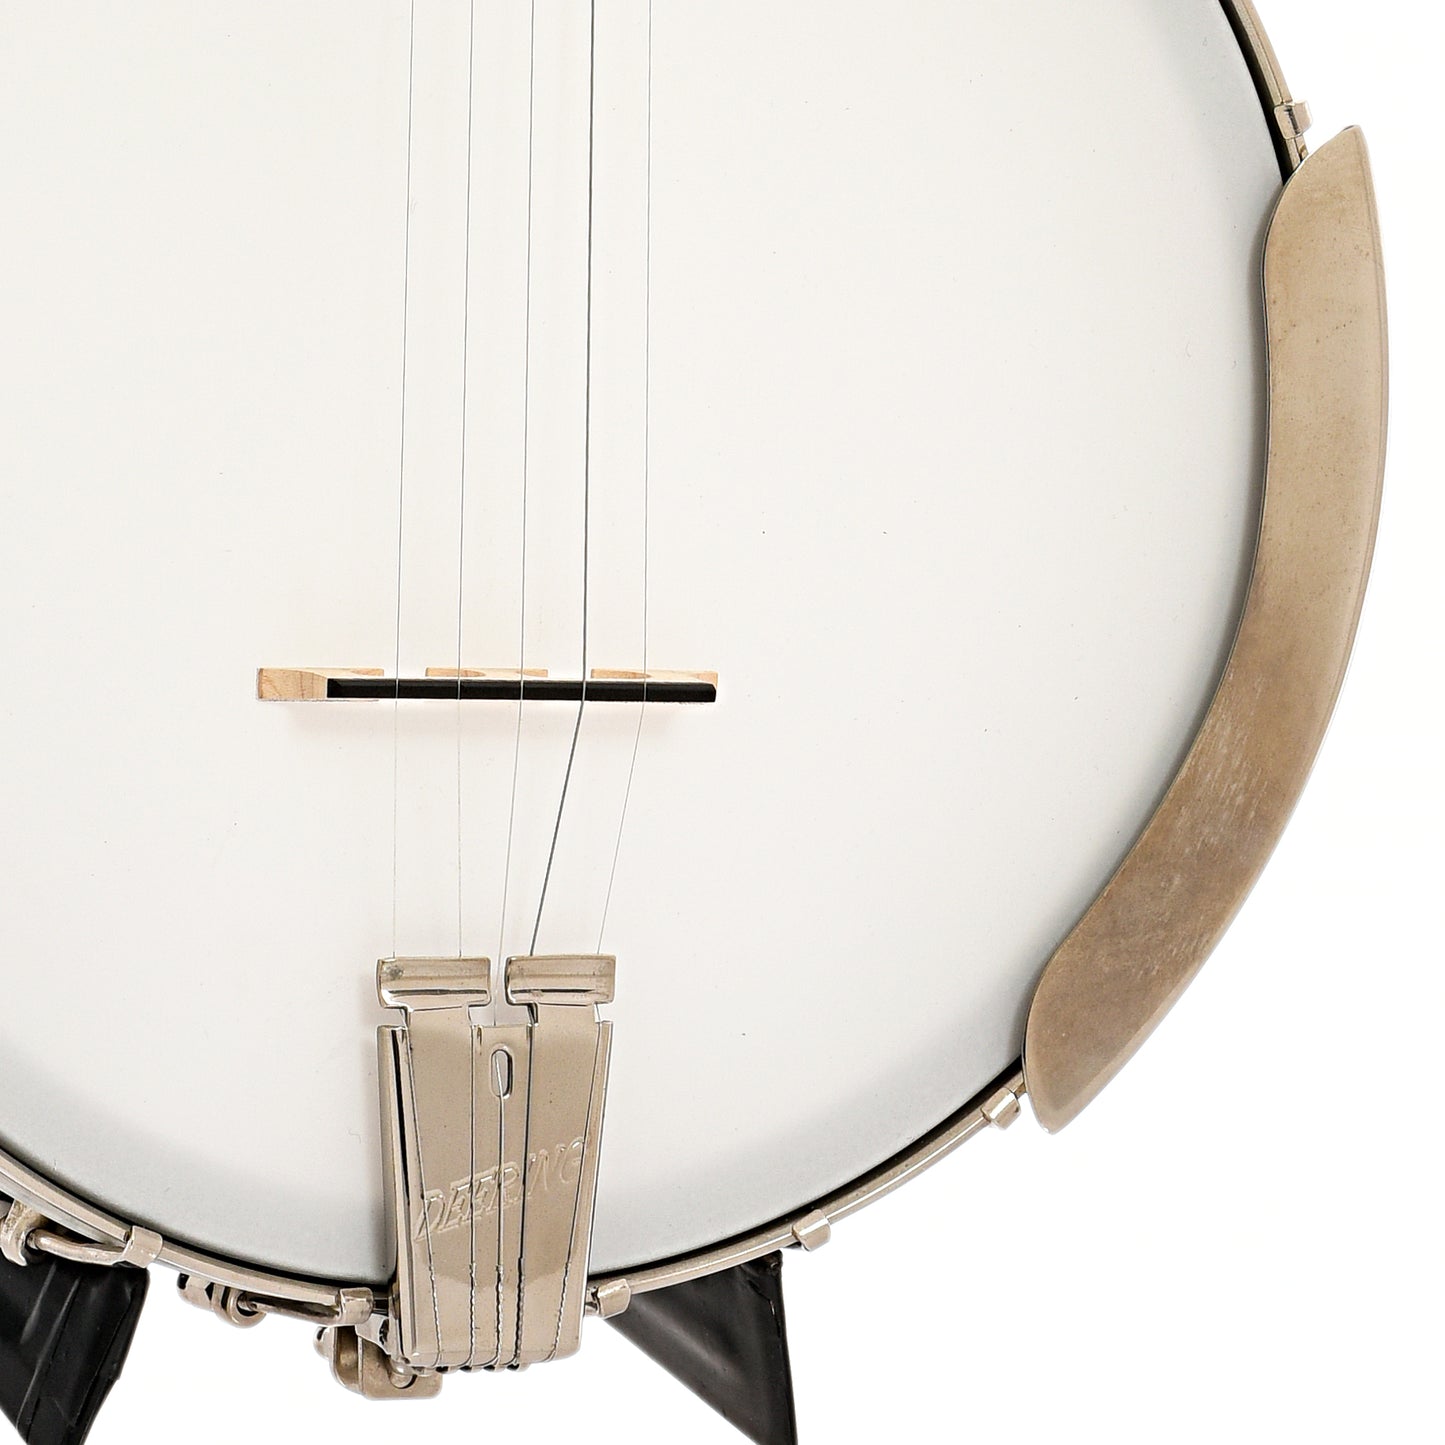 Tailpiece, bridge and armrest of Deering Vega Little Wonder Banjo LH